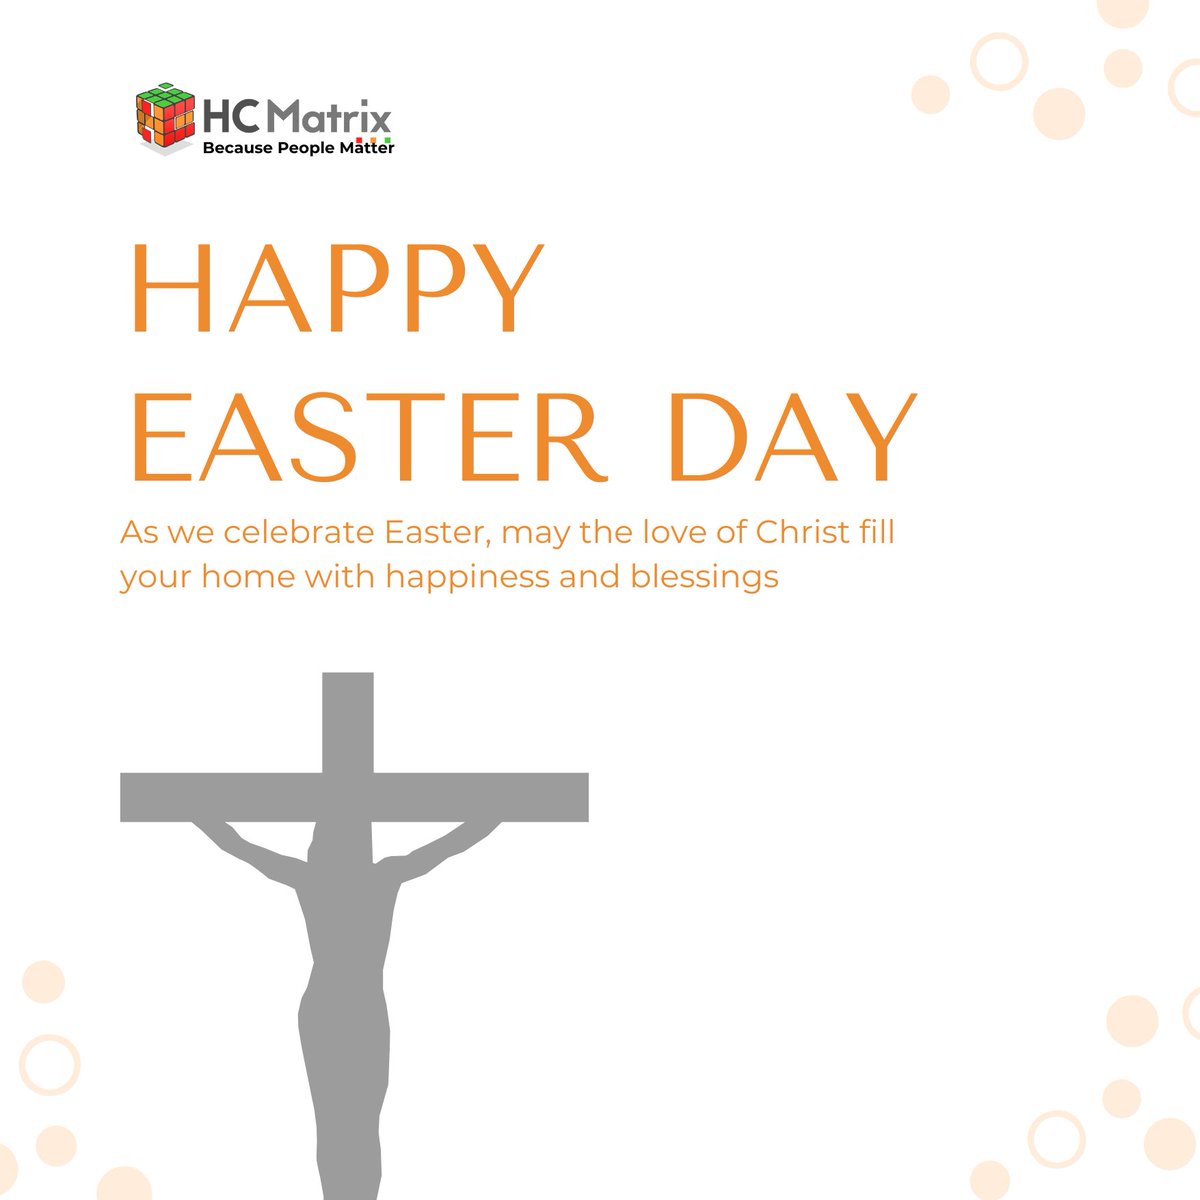 #HeIsRisen #HappyEaster #EasterBlessings #Renewal #Hope